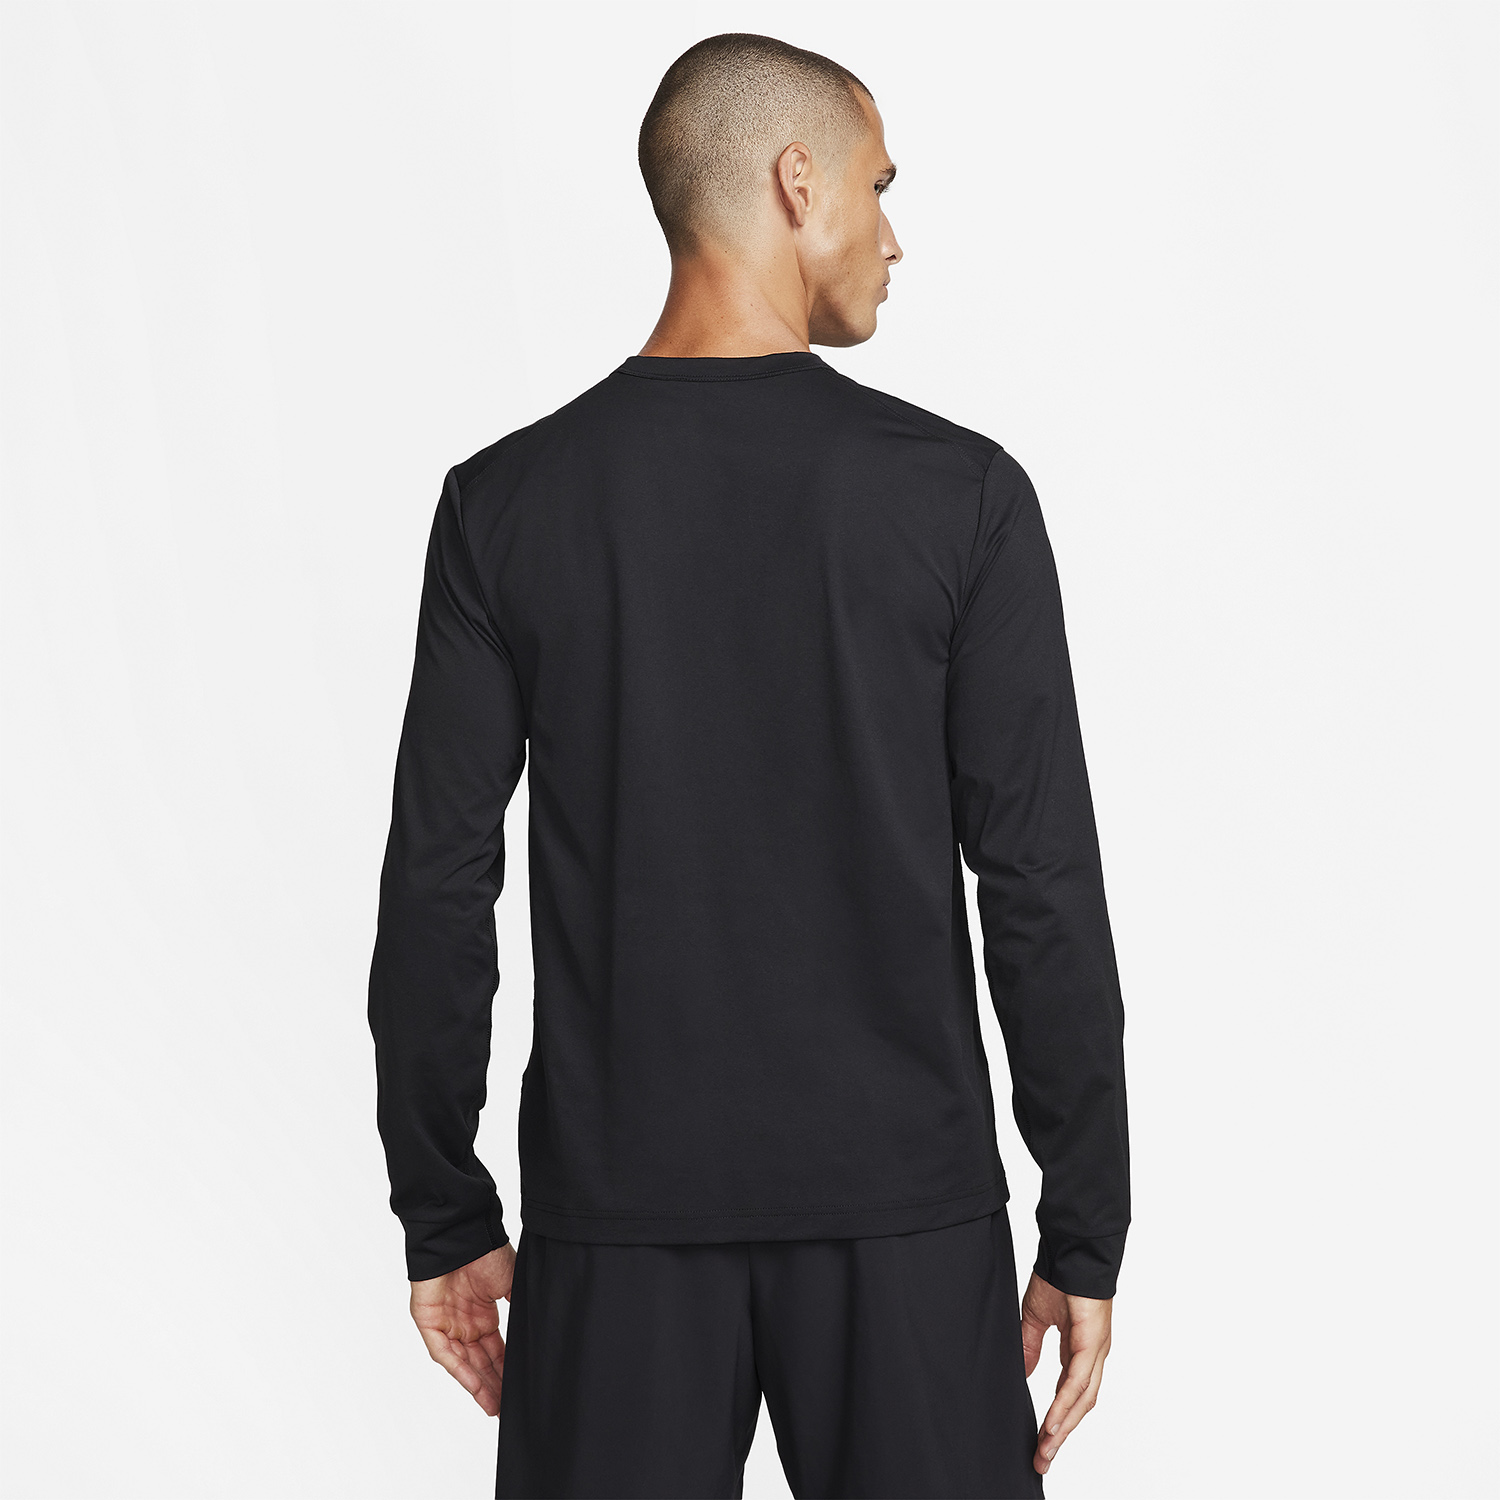 Nike Dri-FIT UV Hyverse Men's Training Shirt - Black/White